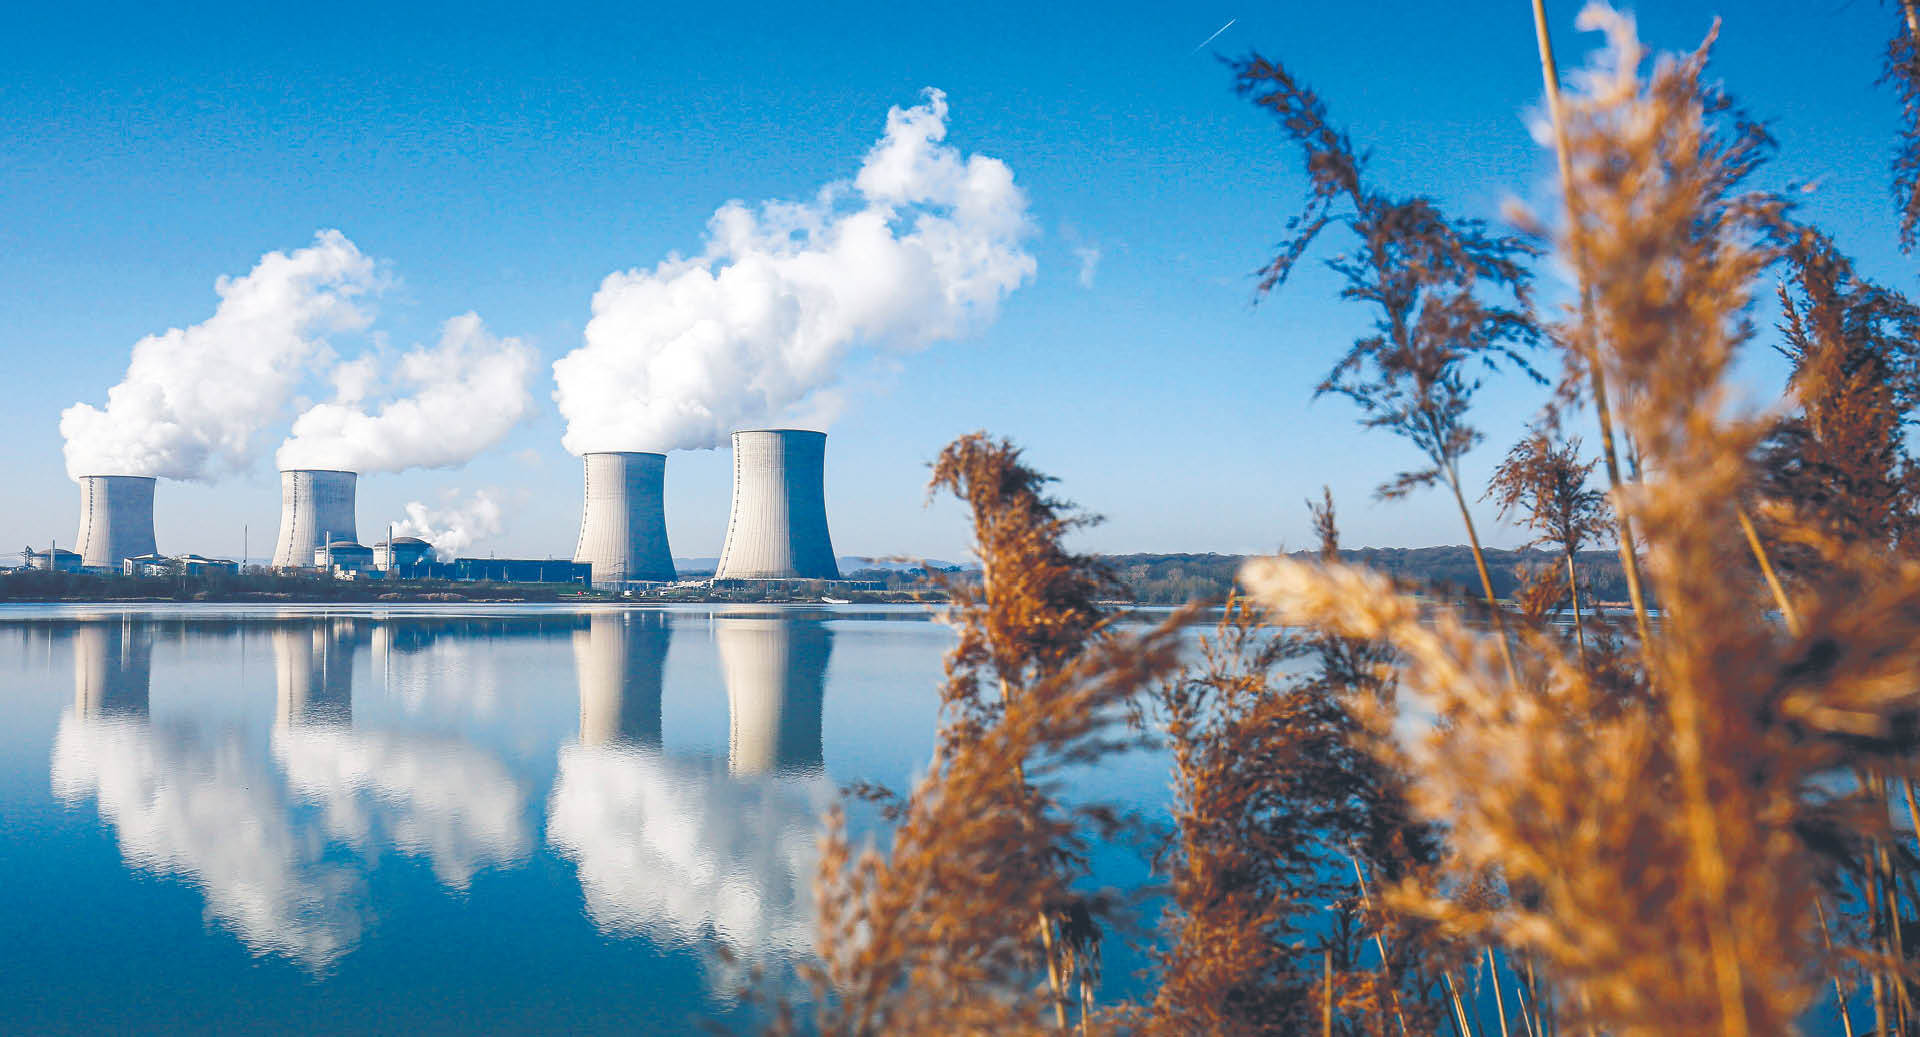 Koalicja byłaby w stanie blokować w Radzie UE propozycje legislacji niekorzystne dla energetyki jądrowej